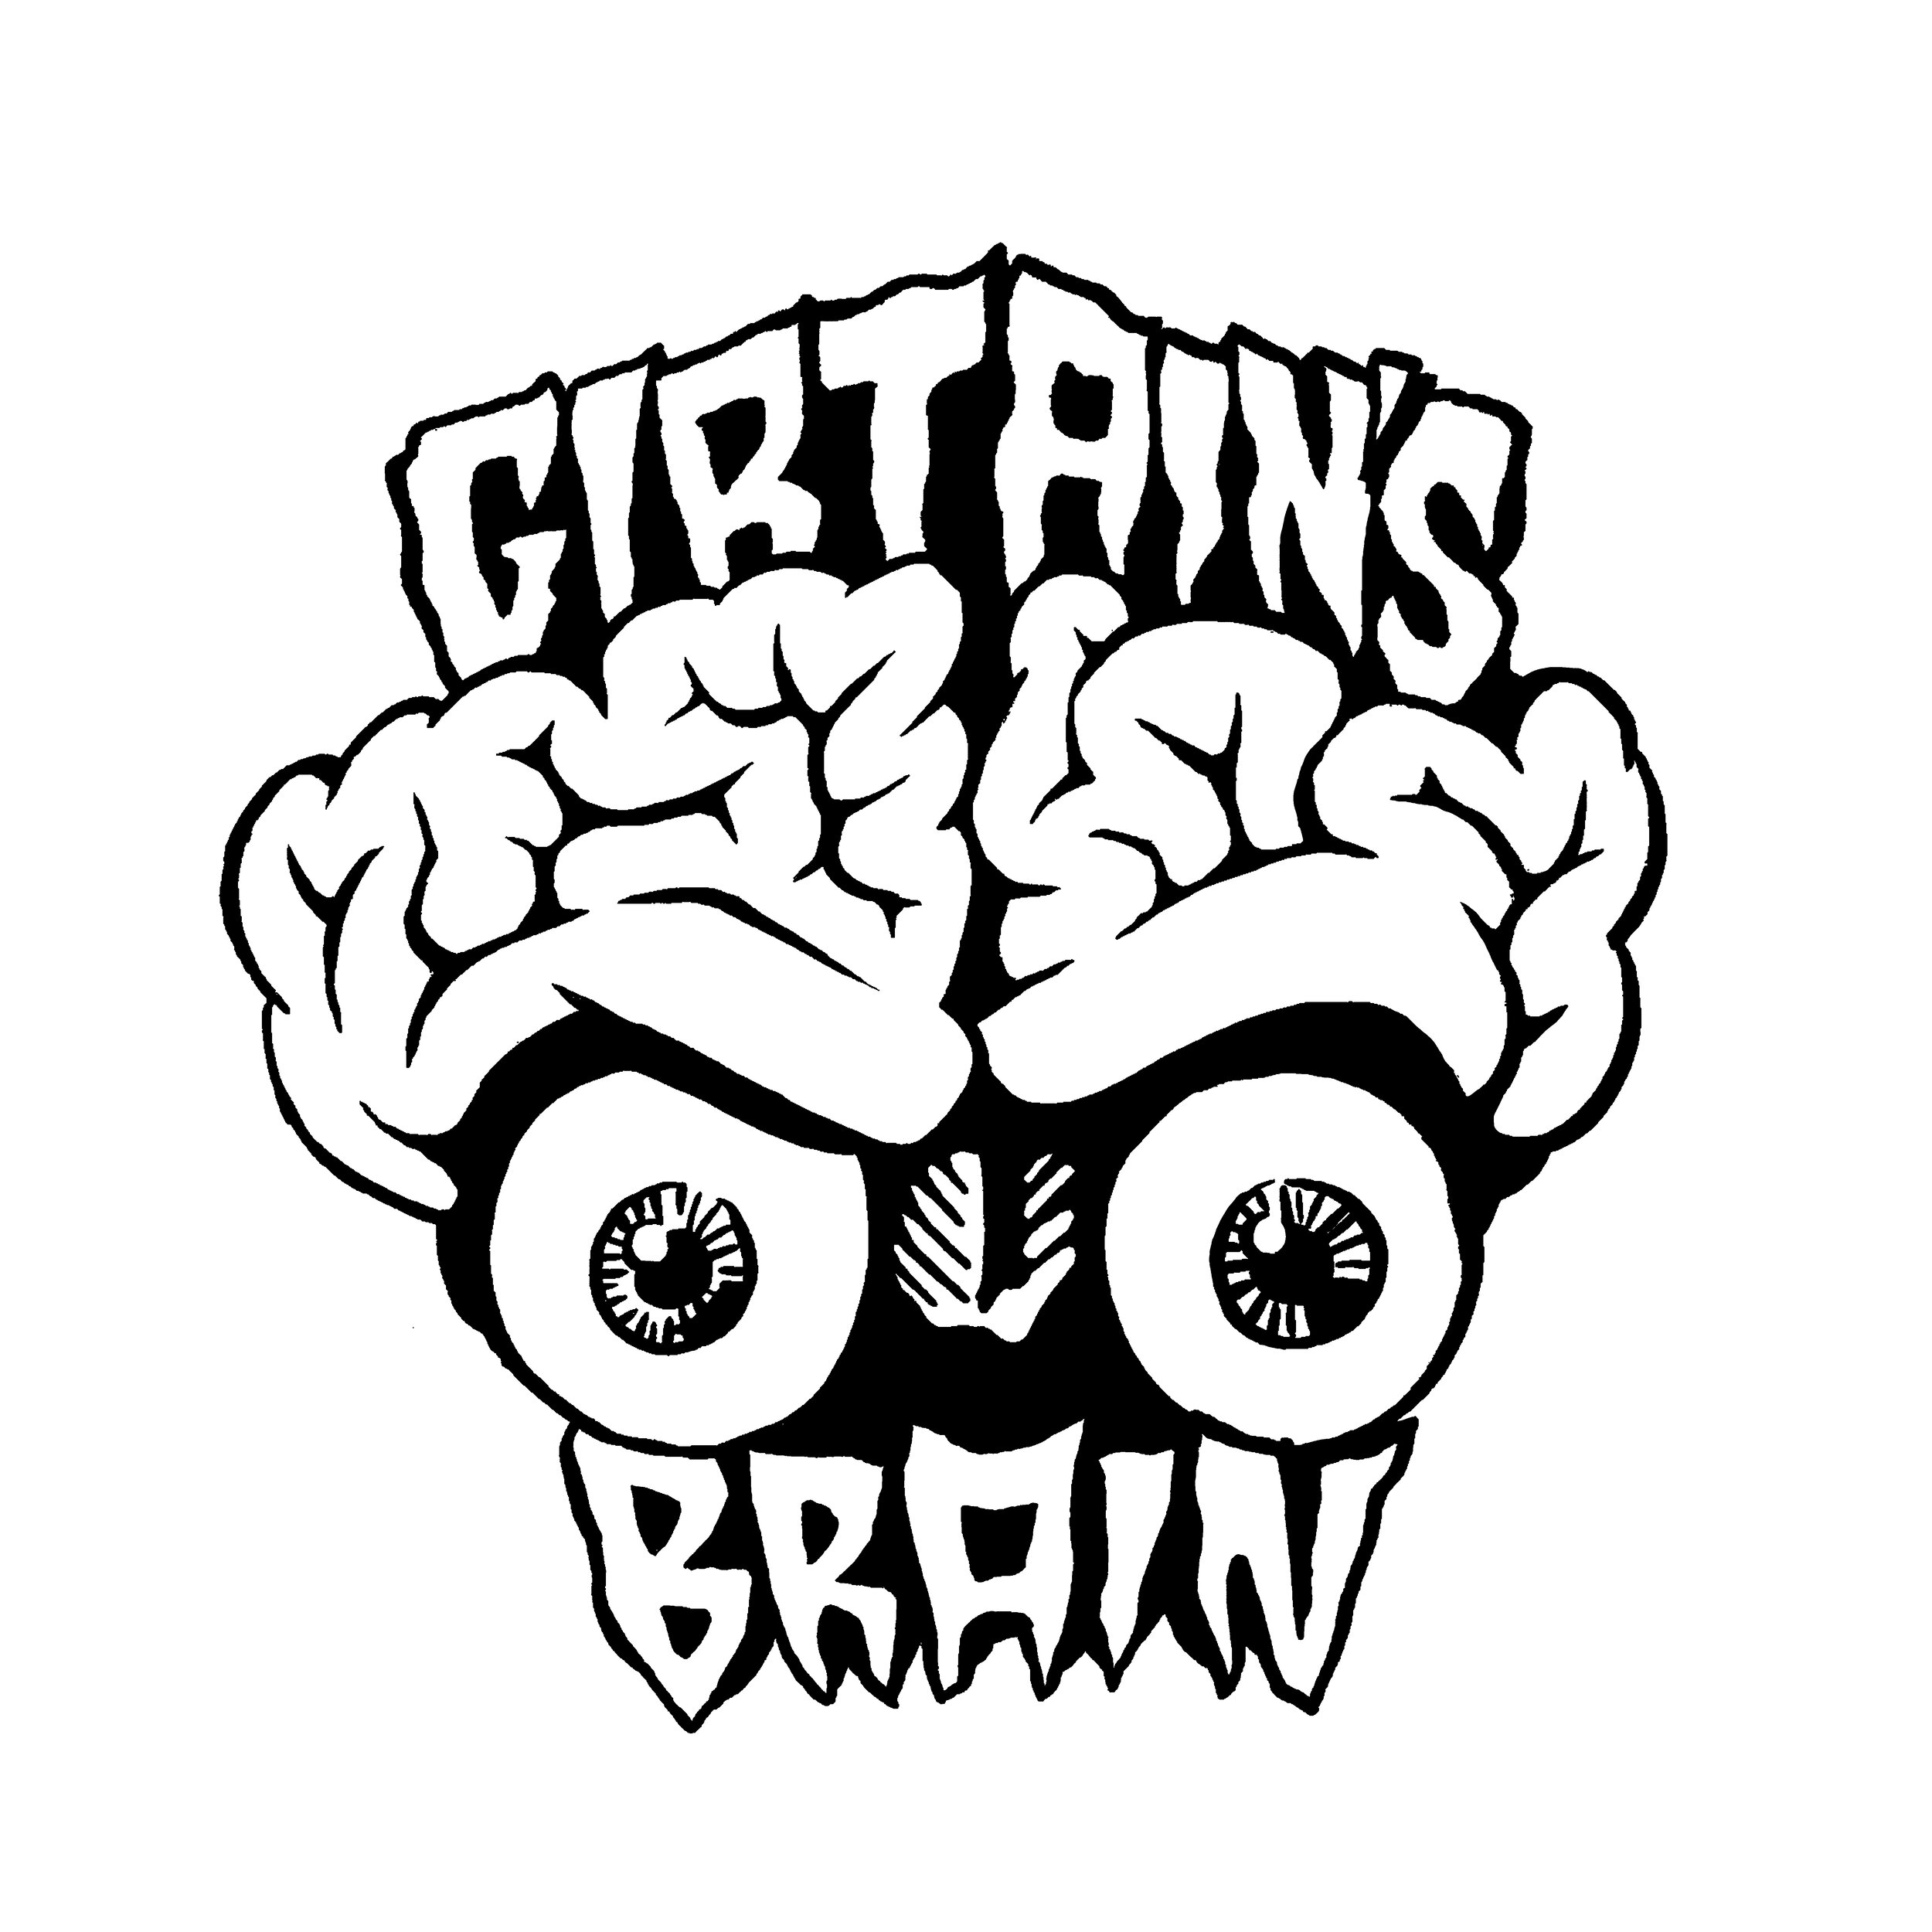 GIRTAINS brain